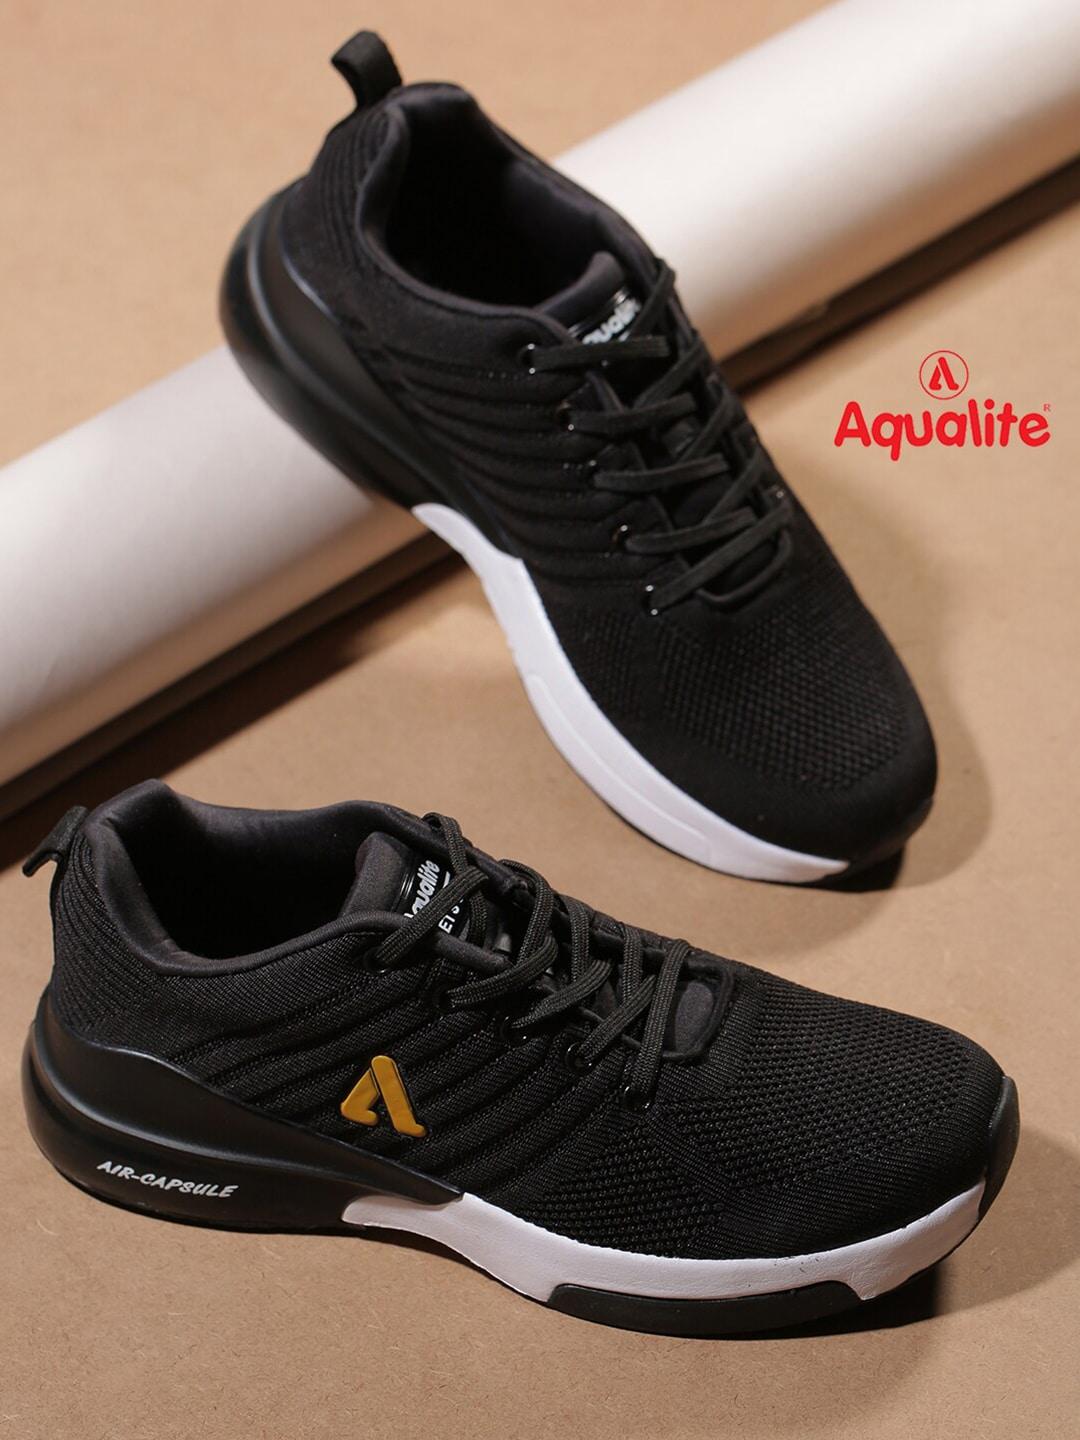 aqualite men black mesh walking non-marking shoes